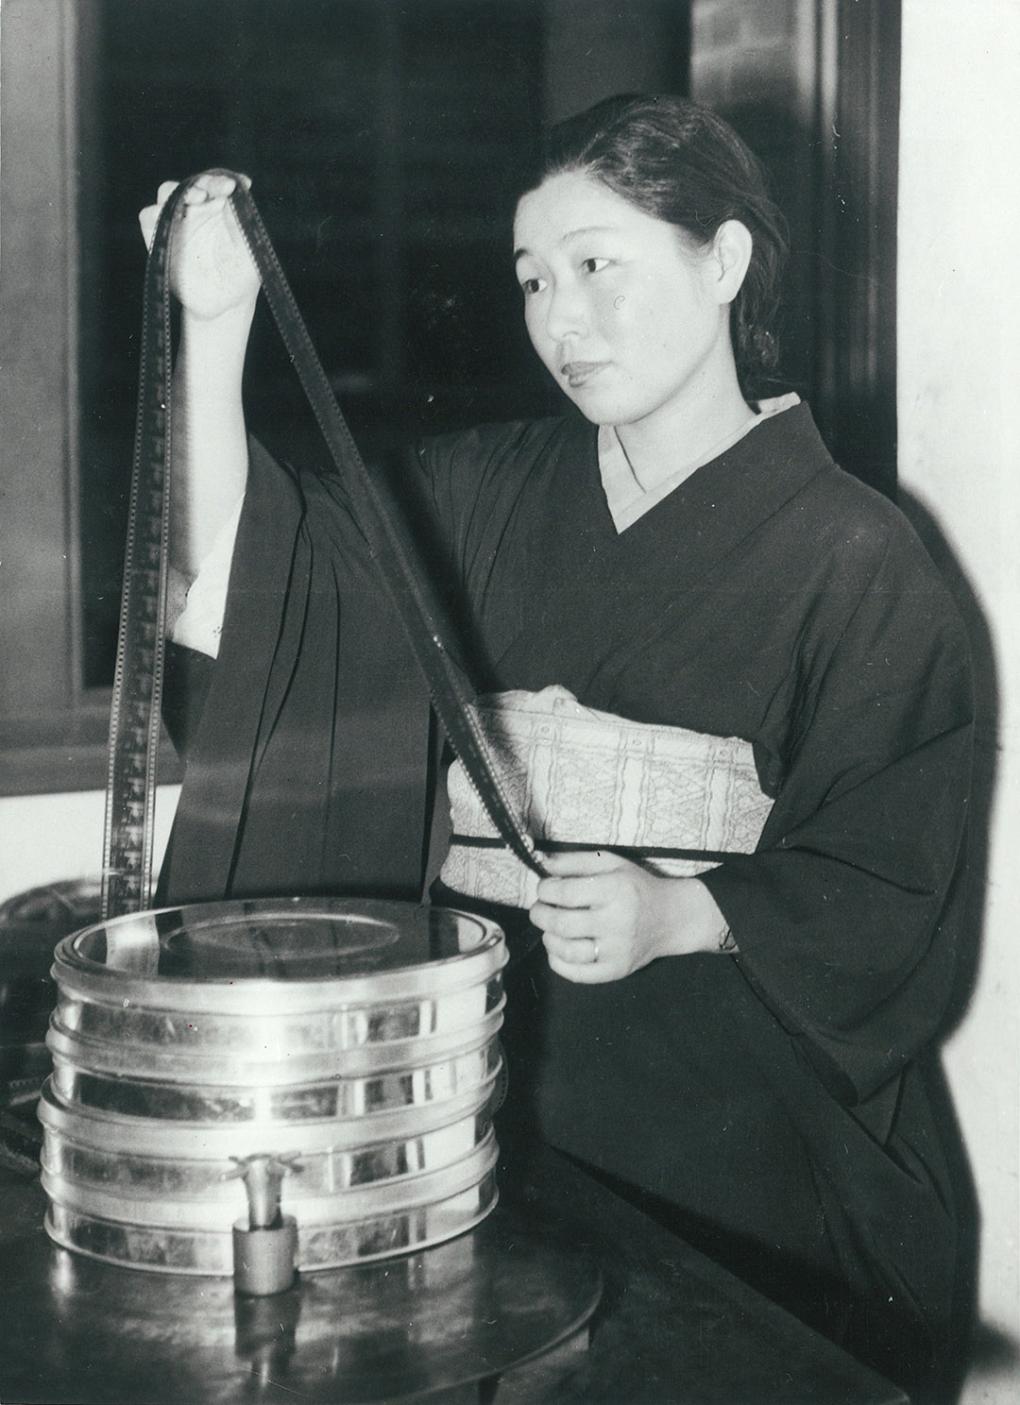 Kashiko Kawakita examining a film print, circa 1932.